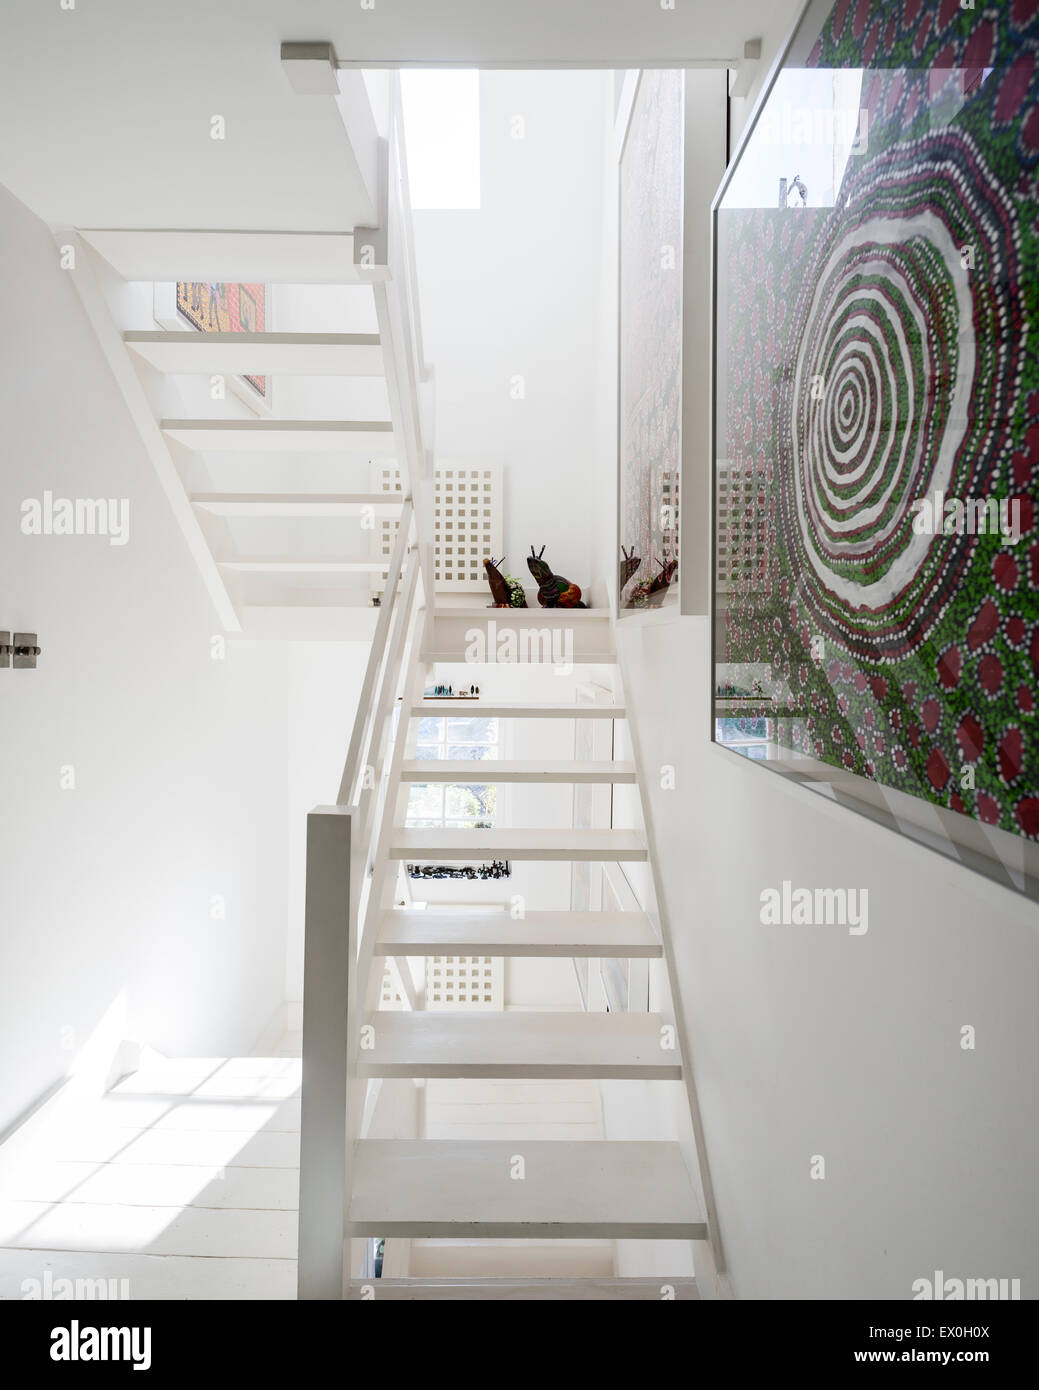 White scale in legno con arte dalla collina Spinifex artisti sulla parete Foto Stock